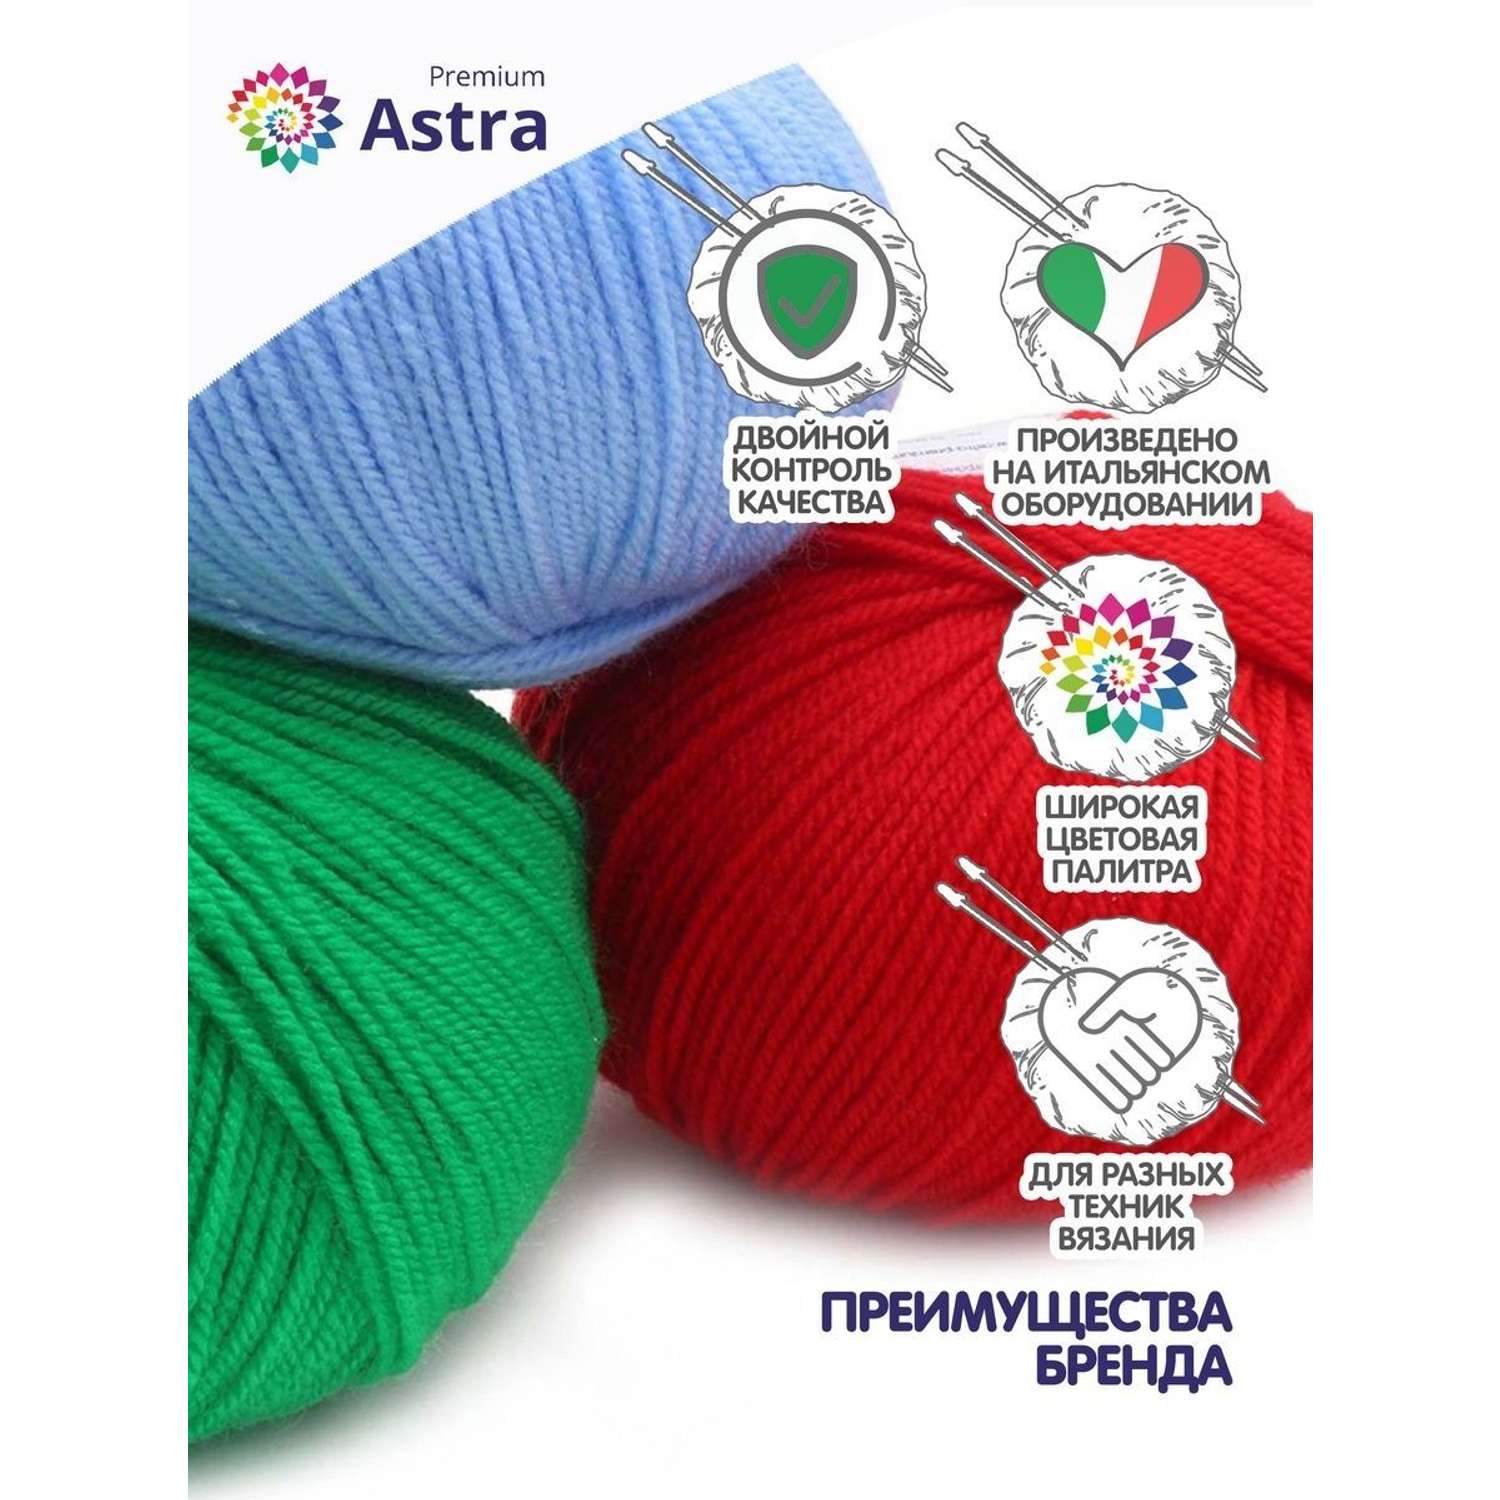 Пряжа для вязания Astra Premium амигуруми акрил для мягких игрушек 50 гр 175 м 003 черный 6 мотков - фото 3